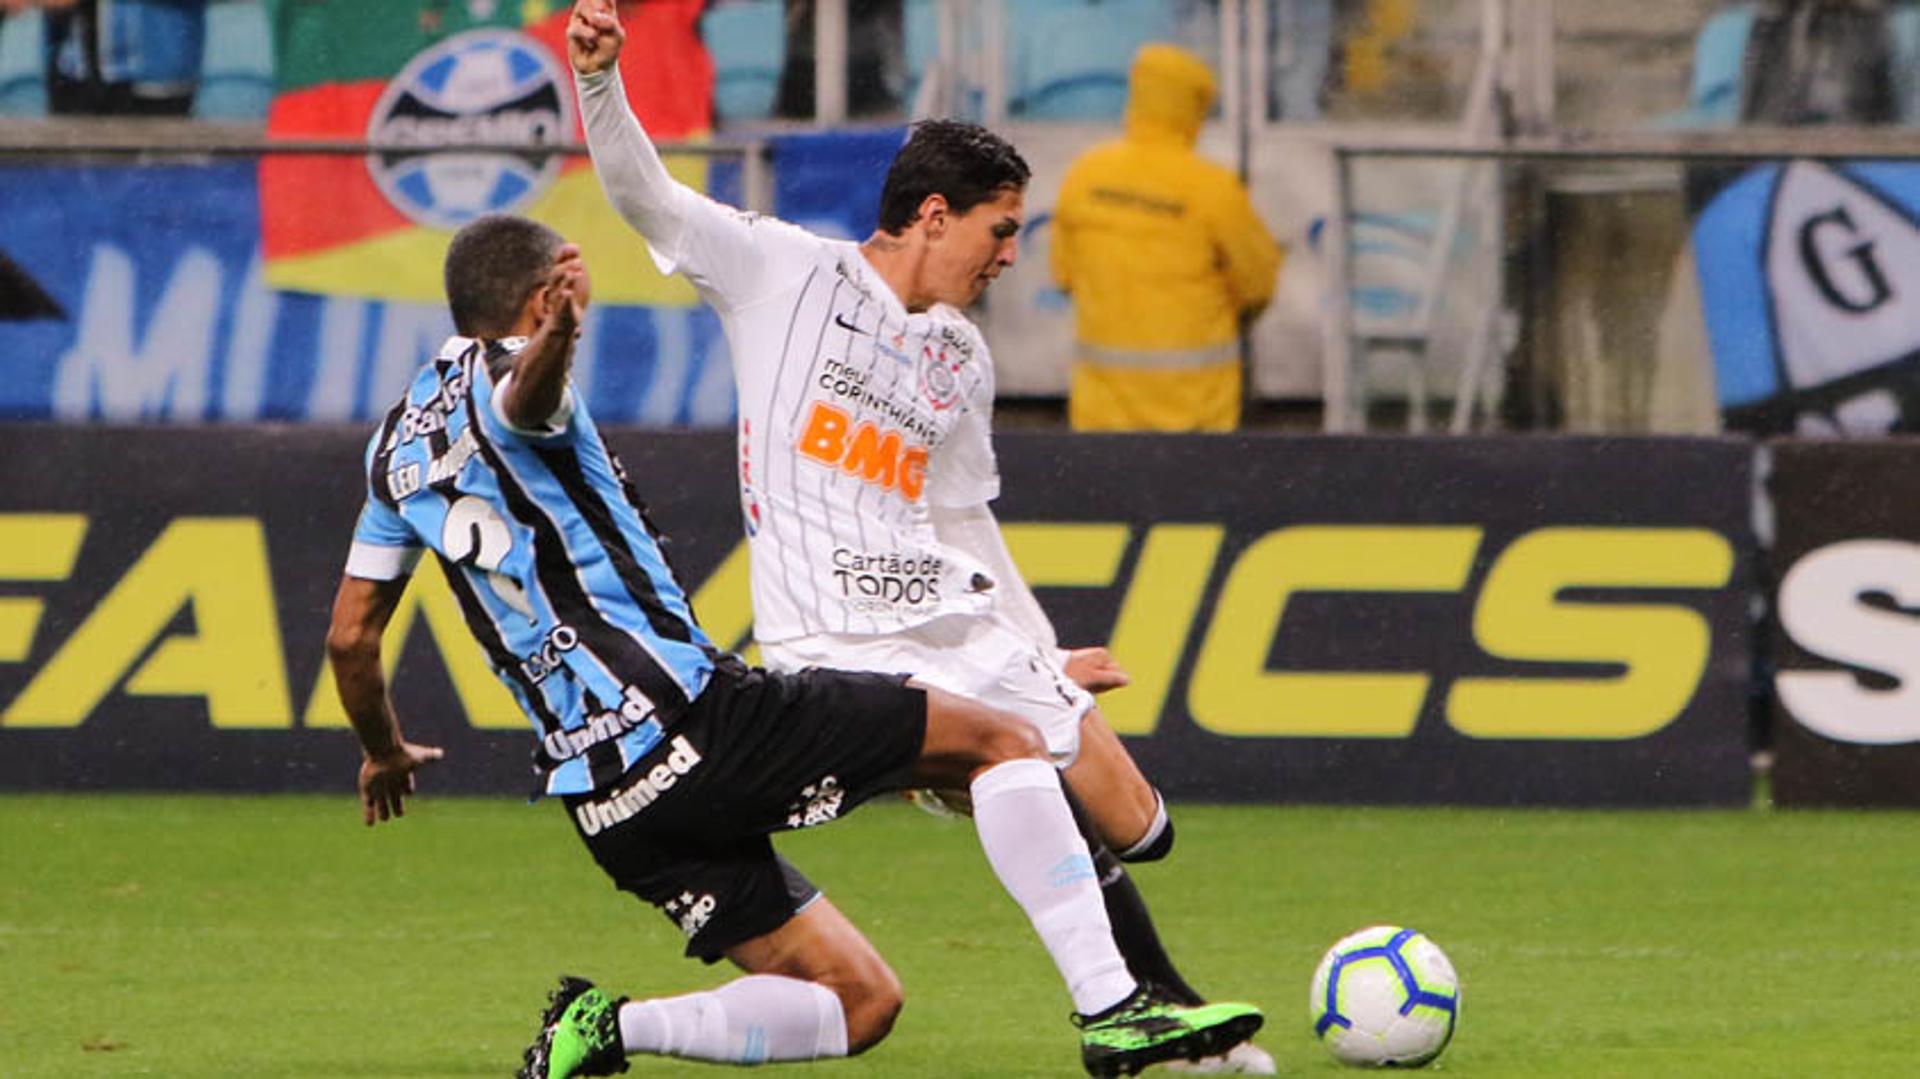 Grêmio x Corinthians - Matheus Vital